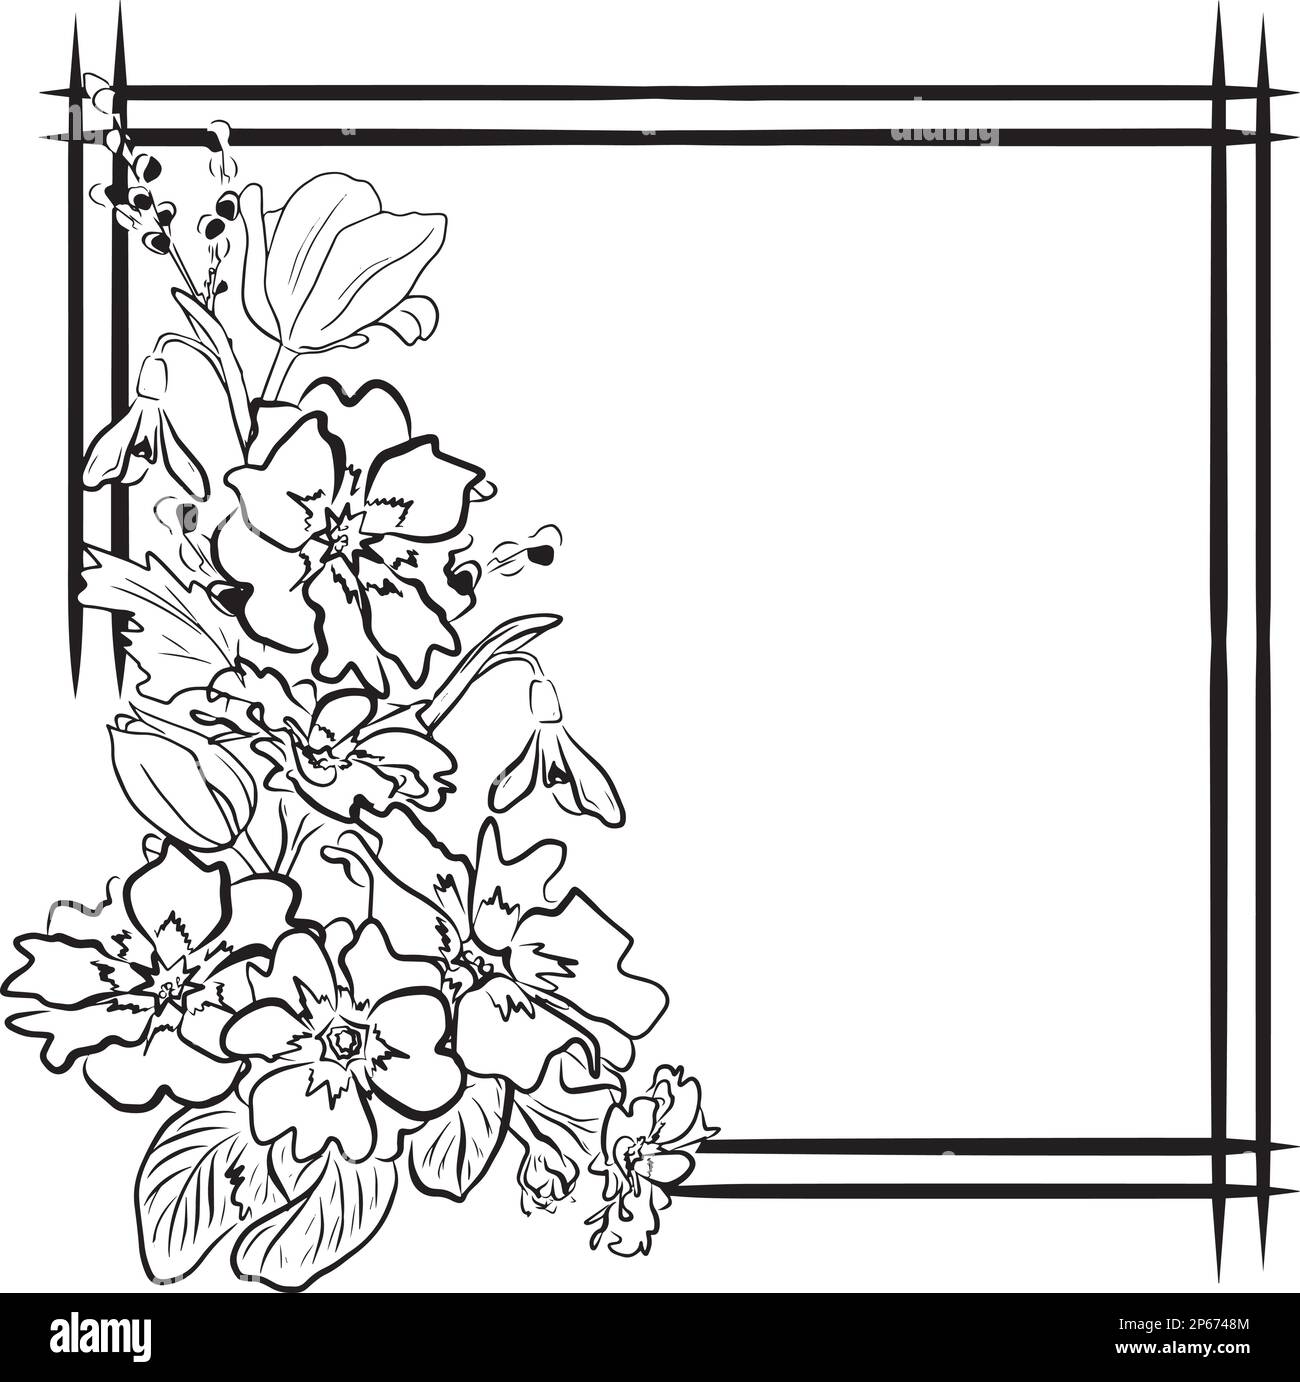 Cadre de dessin vectoriel avec fleurs printanières Illustration de Vecteur